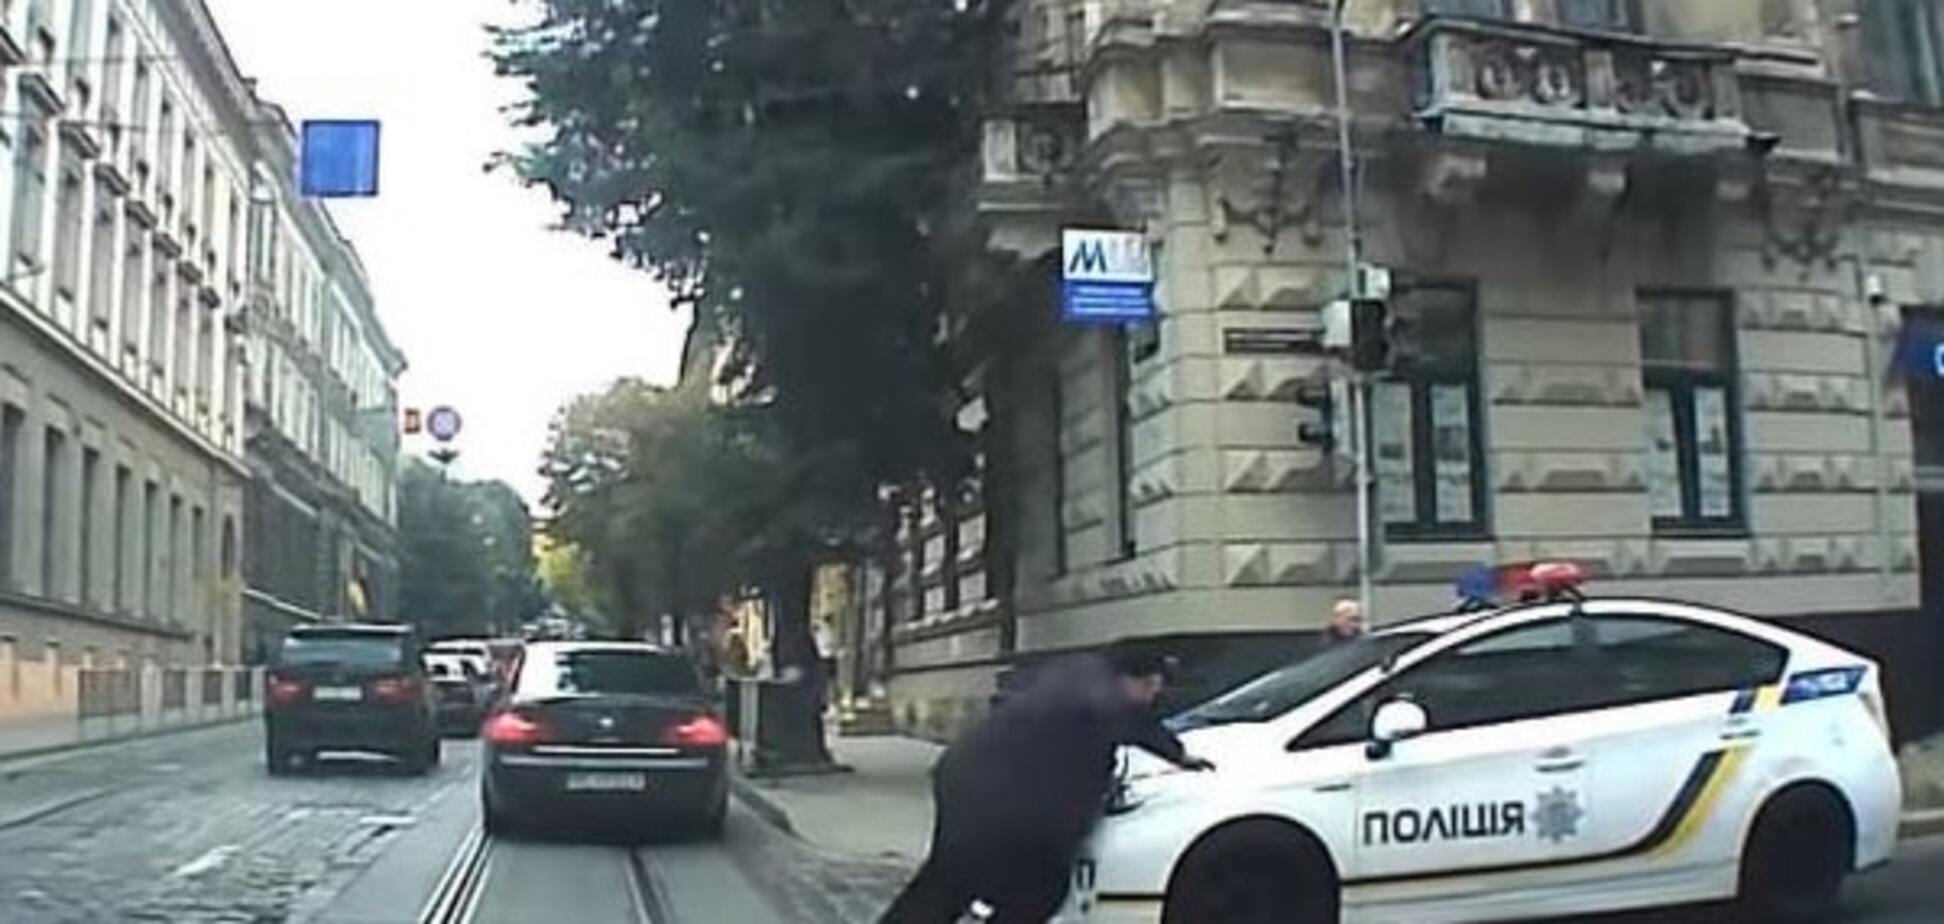 Во Львове полиция сбила женщину на пешеходном переходе: видеофакт